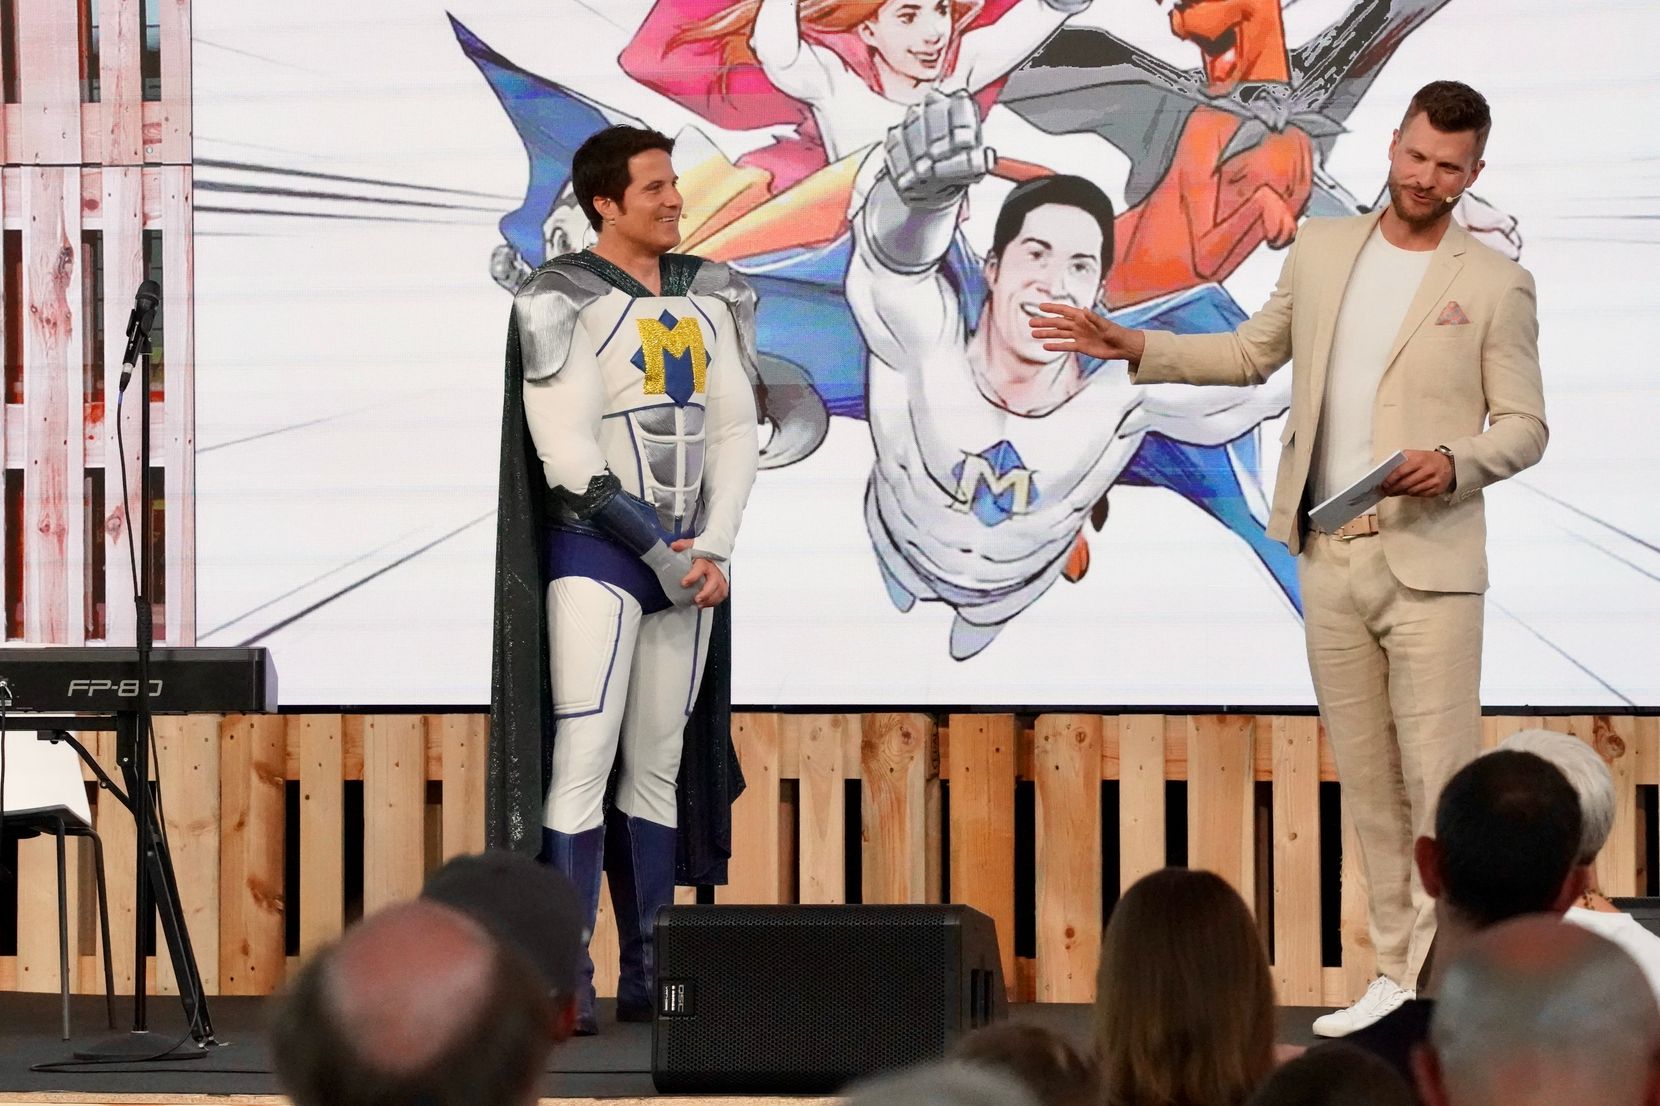 Zwei Männer, einer davon als Superheld verkleidet, stehen auf einer Bühne.